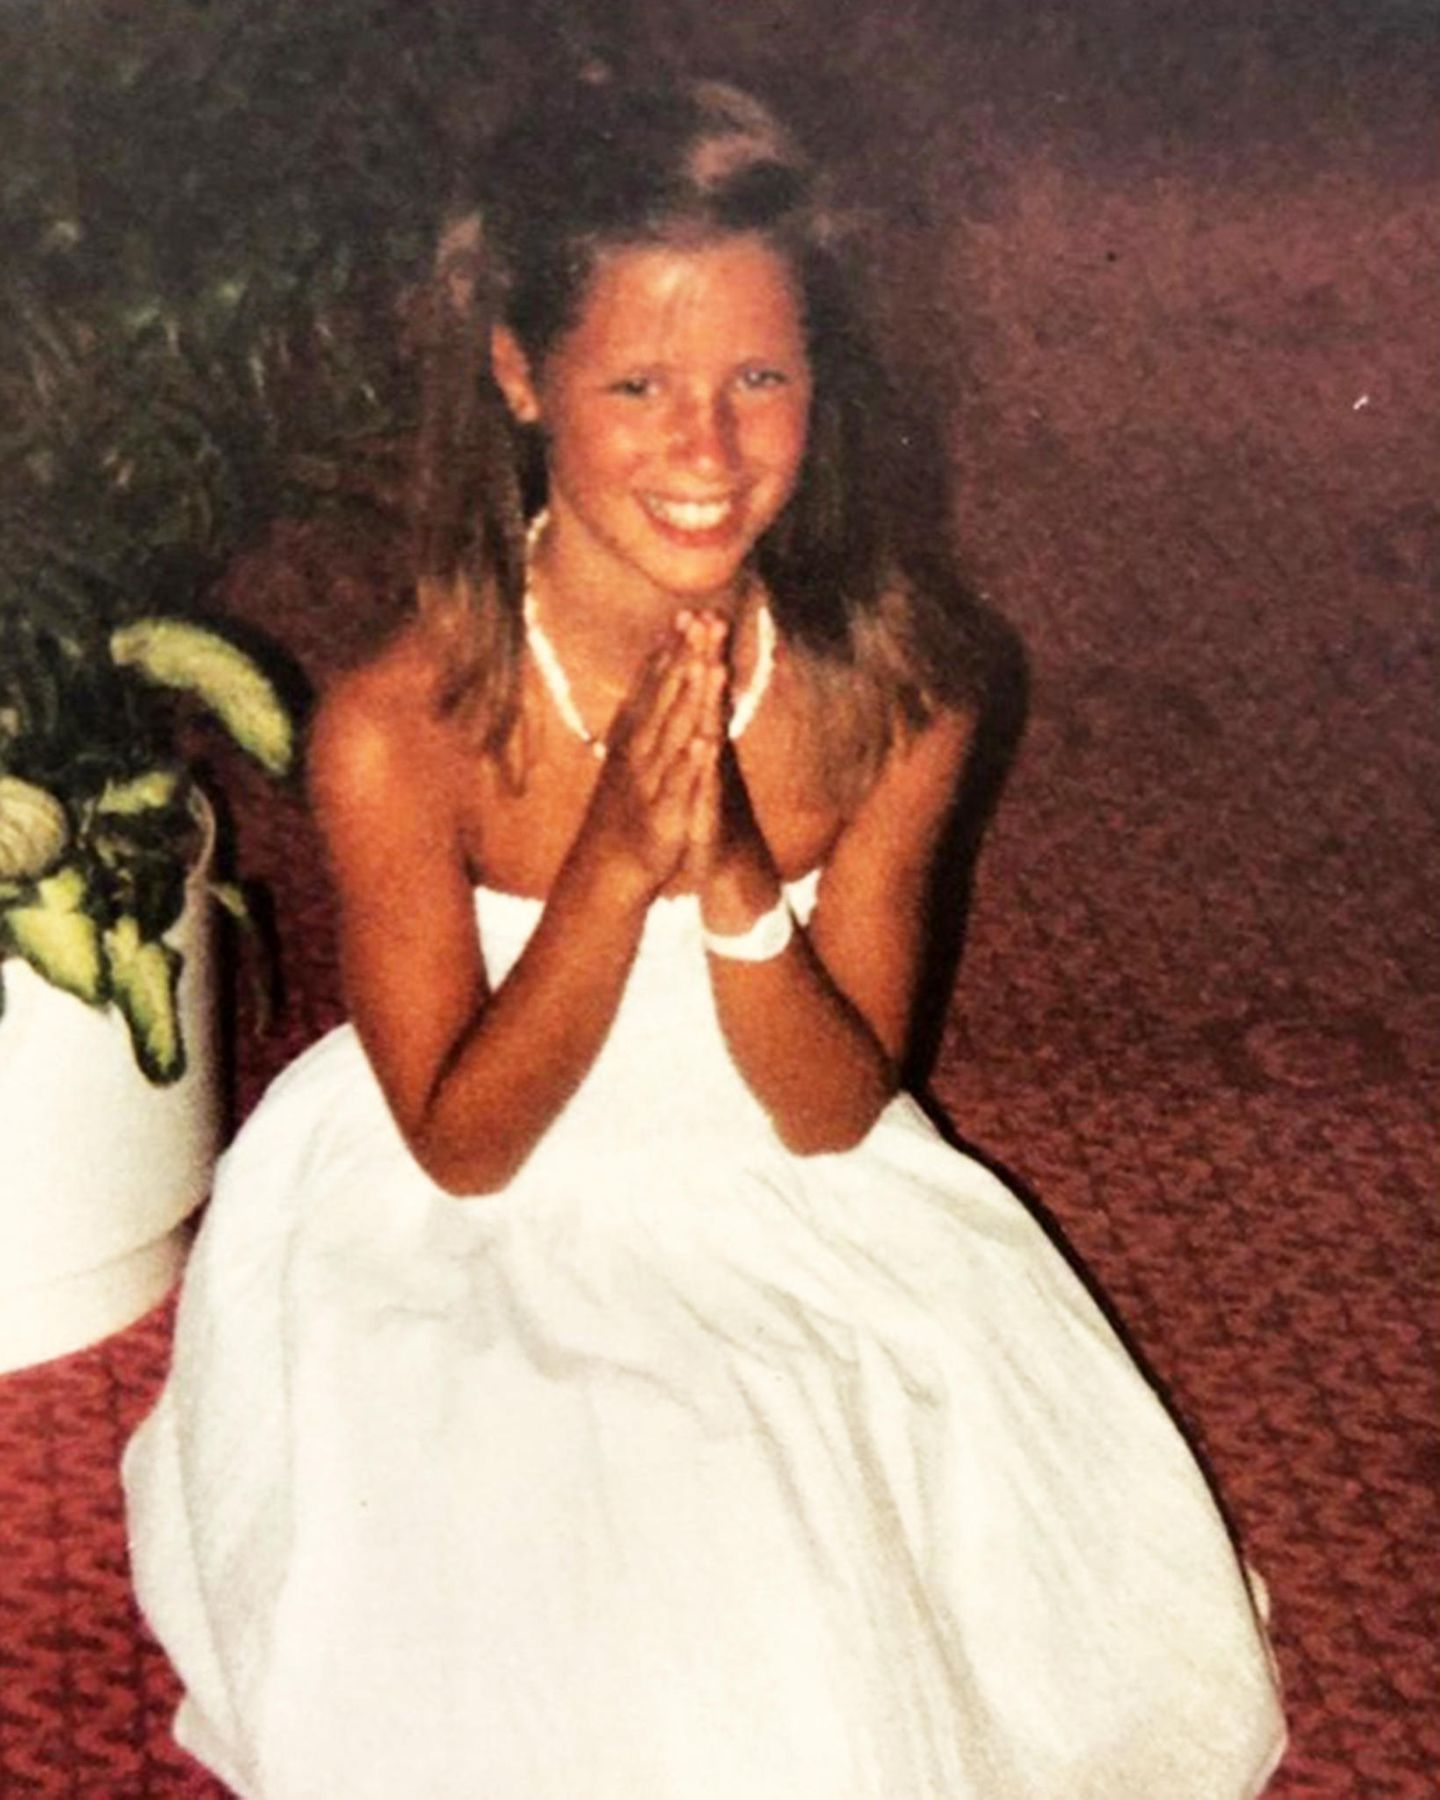 Kommt Ihnen dieses süße Lächeln bekannt vor? Richtig, das ist Michelle Hunziker mit niedlichen 9 Jahren und der stolzen Dankbarkeit, sich mit ihrem neuen weißen Kleid, wie eine Prinzessin zu fühlen. Mit diesem süßen Throwback-Foto erzählt sie, wie verrückt sie ihre Mutter damals gemacht hat, um dieses Kleid zu bekommen.